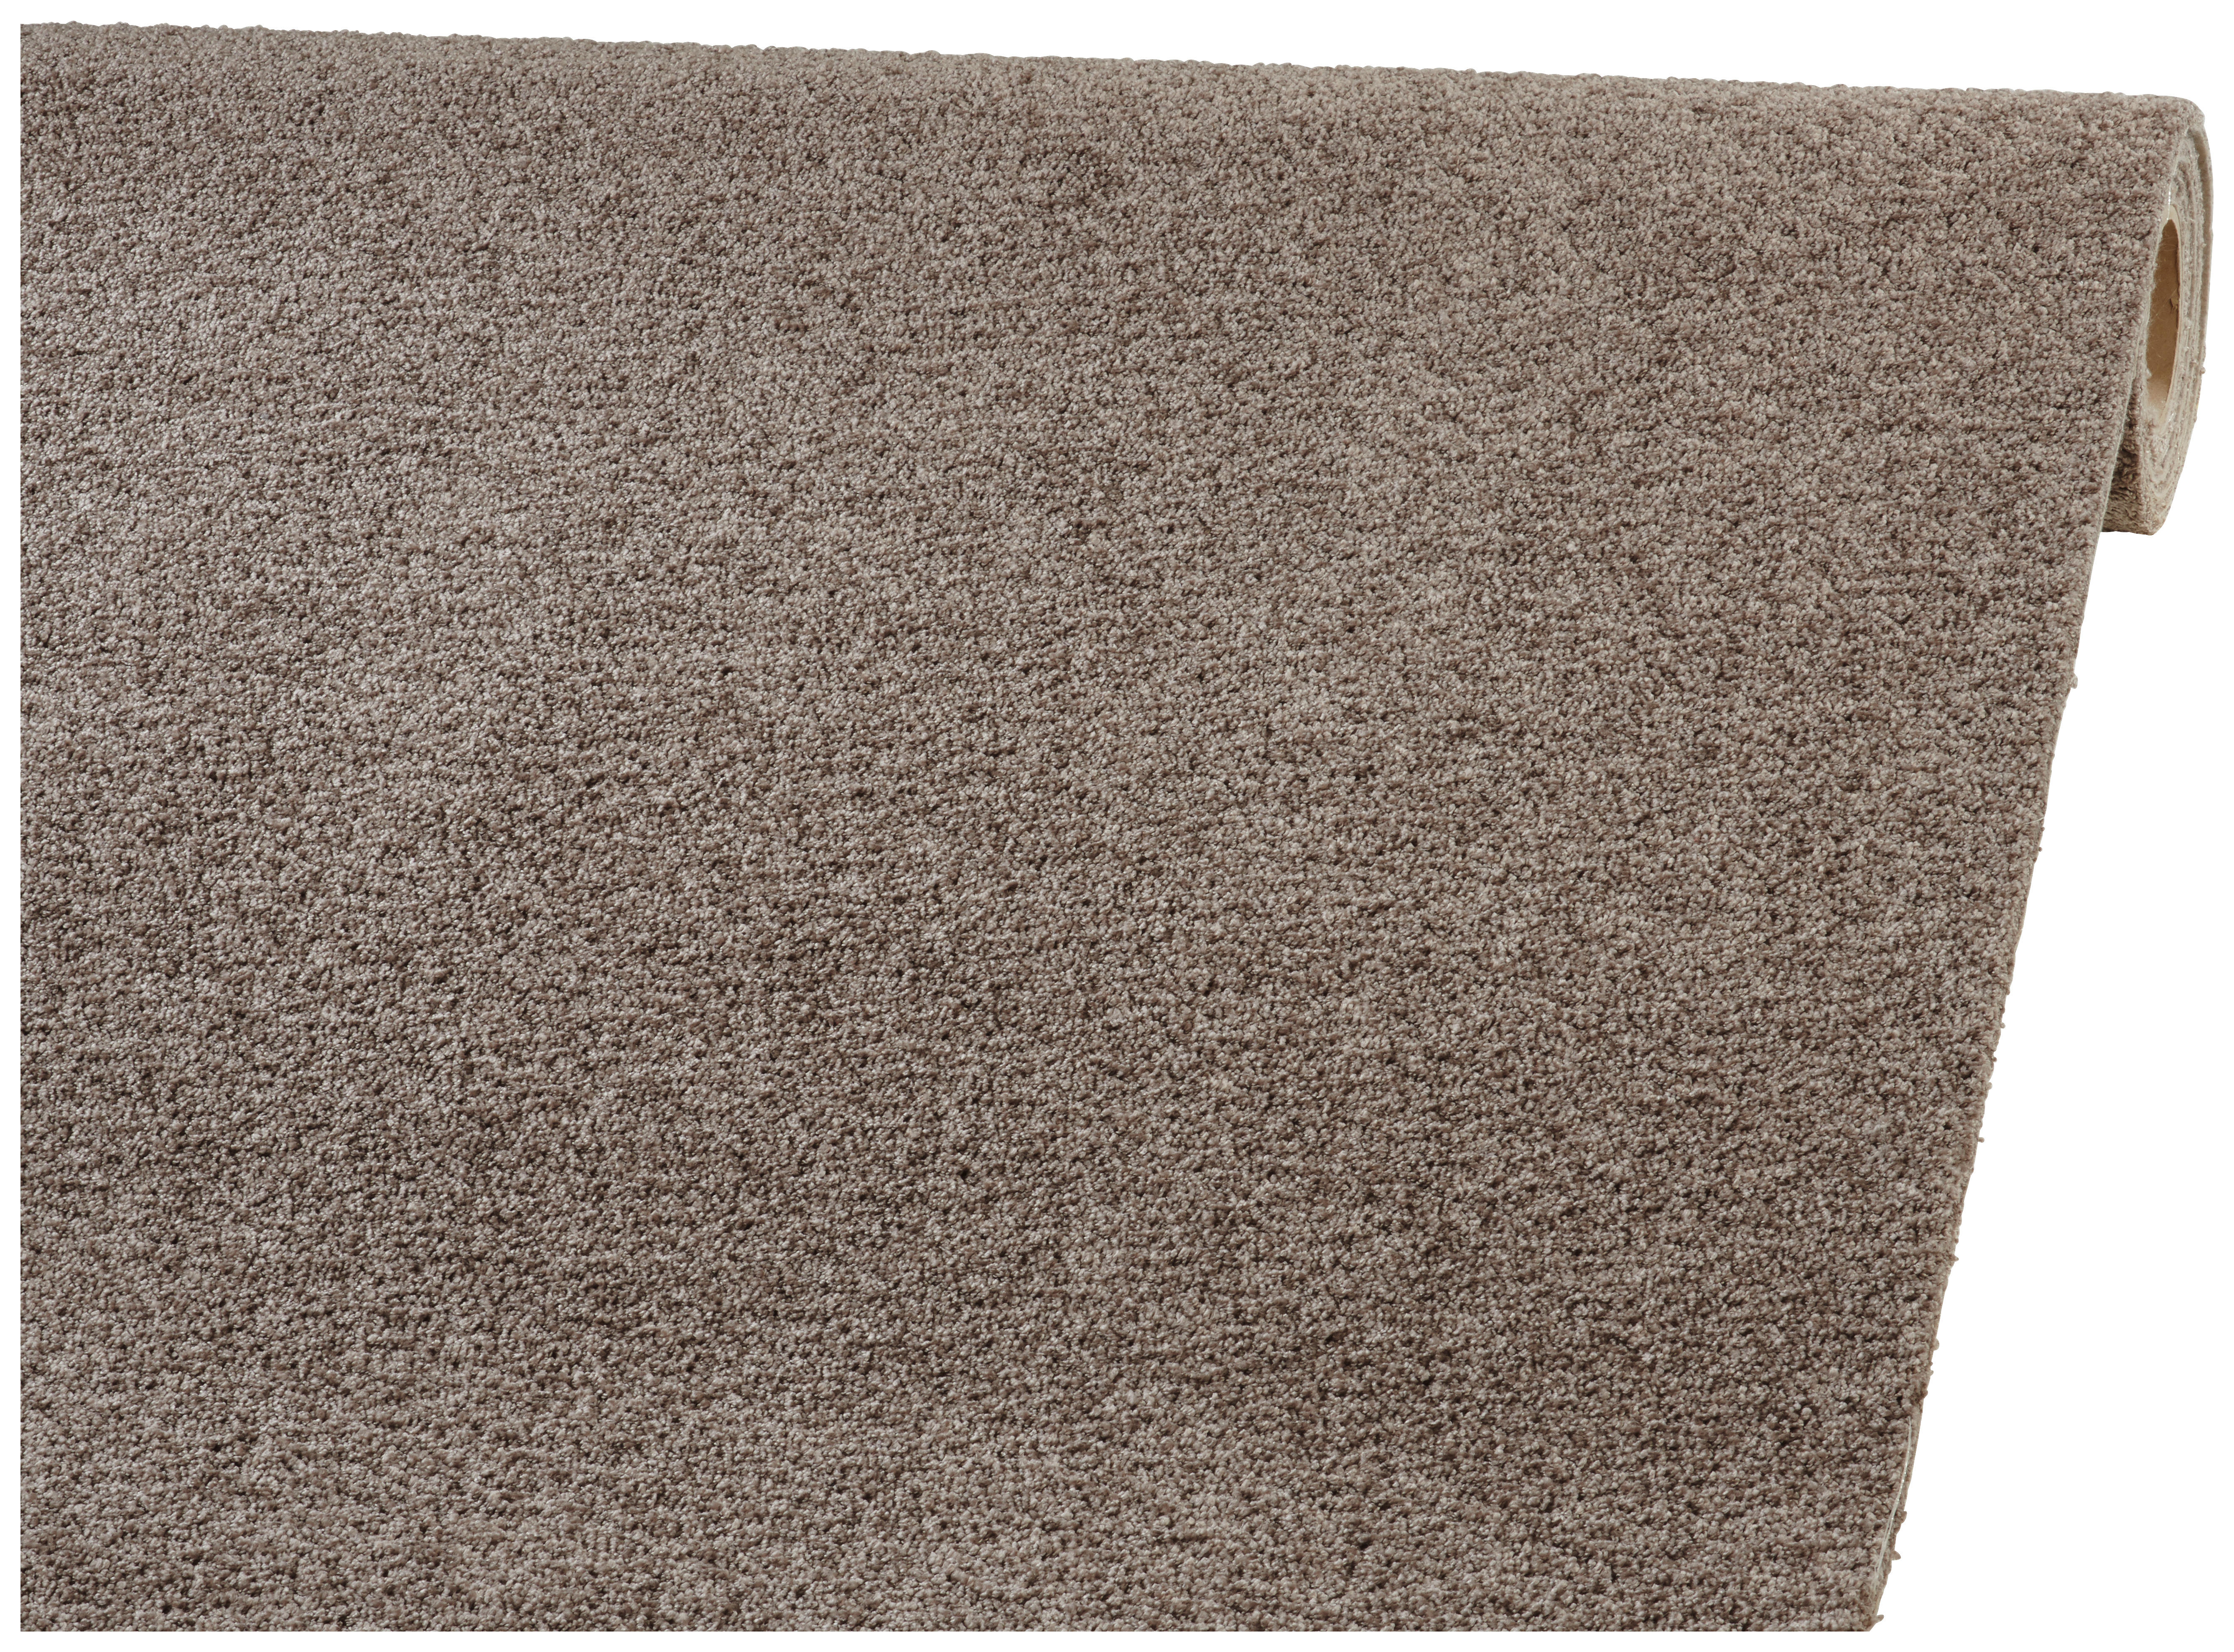 Nadelfilz teppichboden - Unsere Favoriten unter den verglichenenNadelfilz teppichboden!